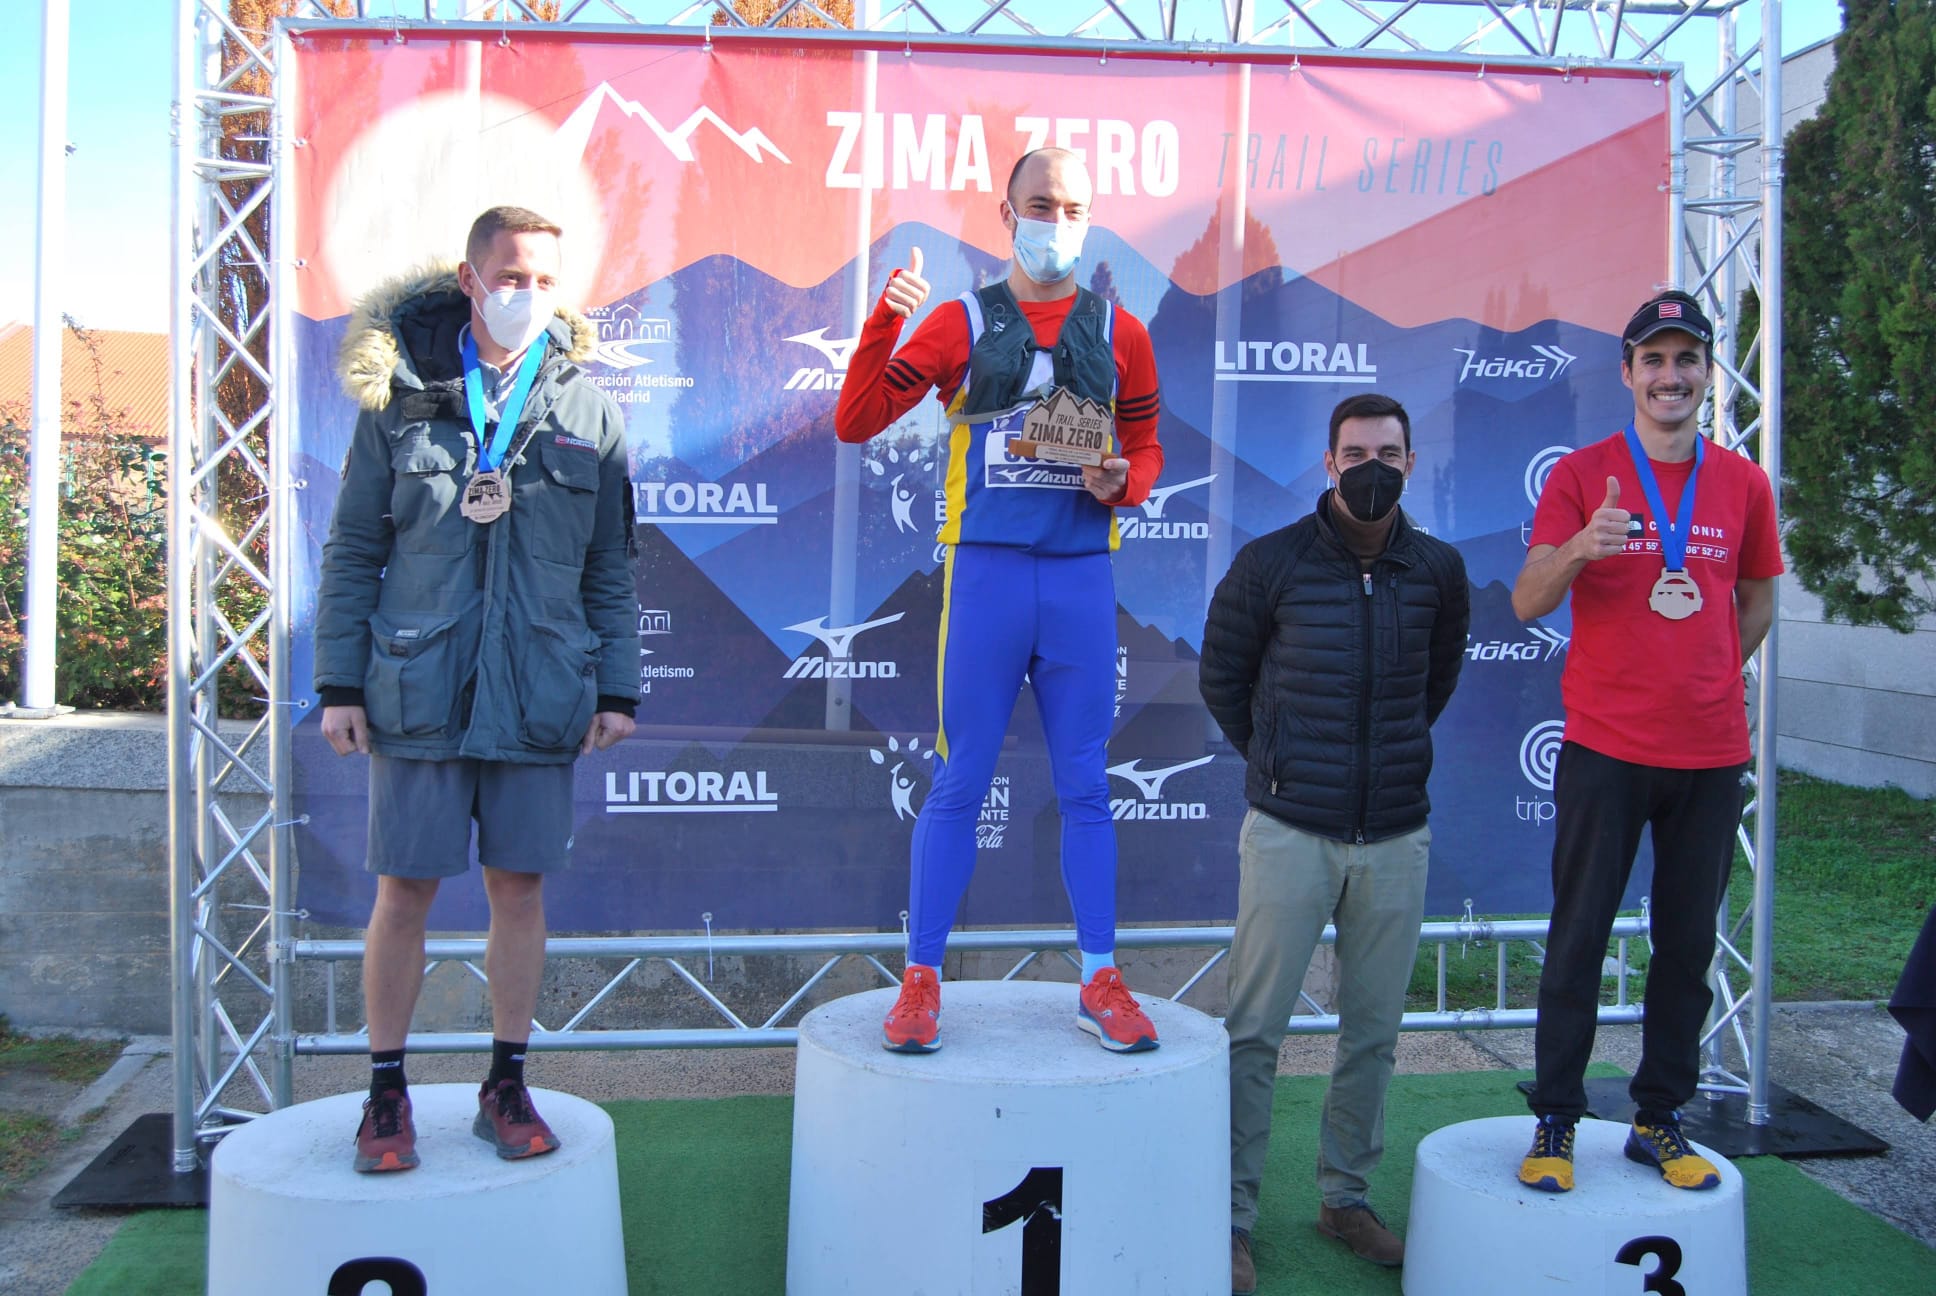 El deporte vuelve a triunfar en Valdemorillo con el rotundo éxito de participación en su estreno en el Circuito Zima Zero